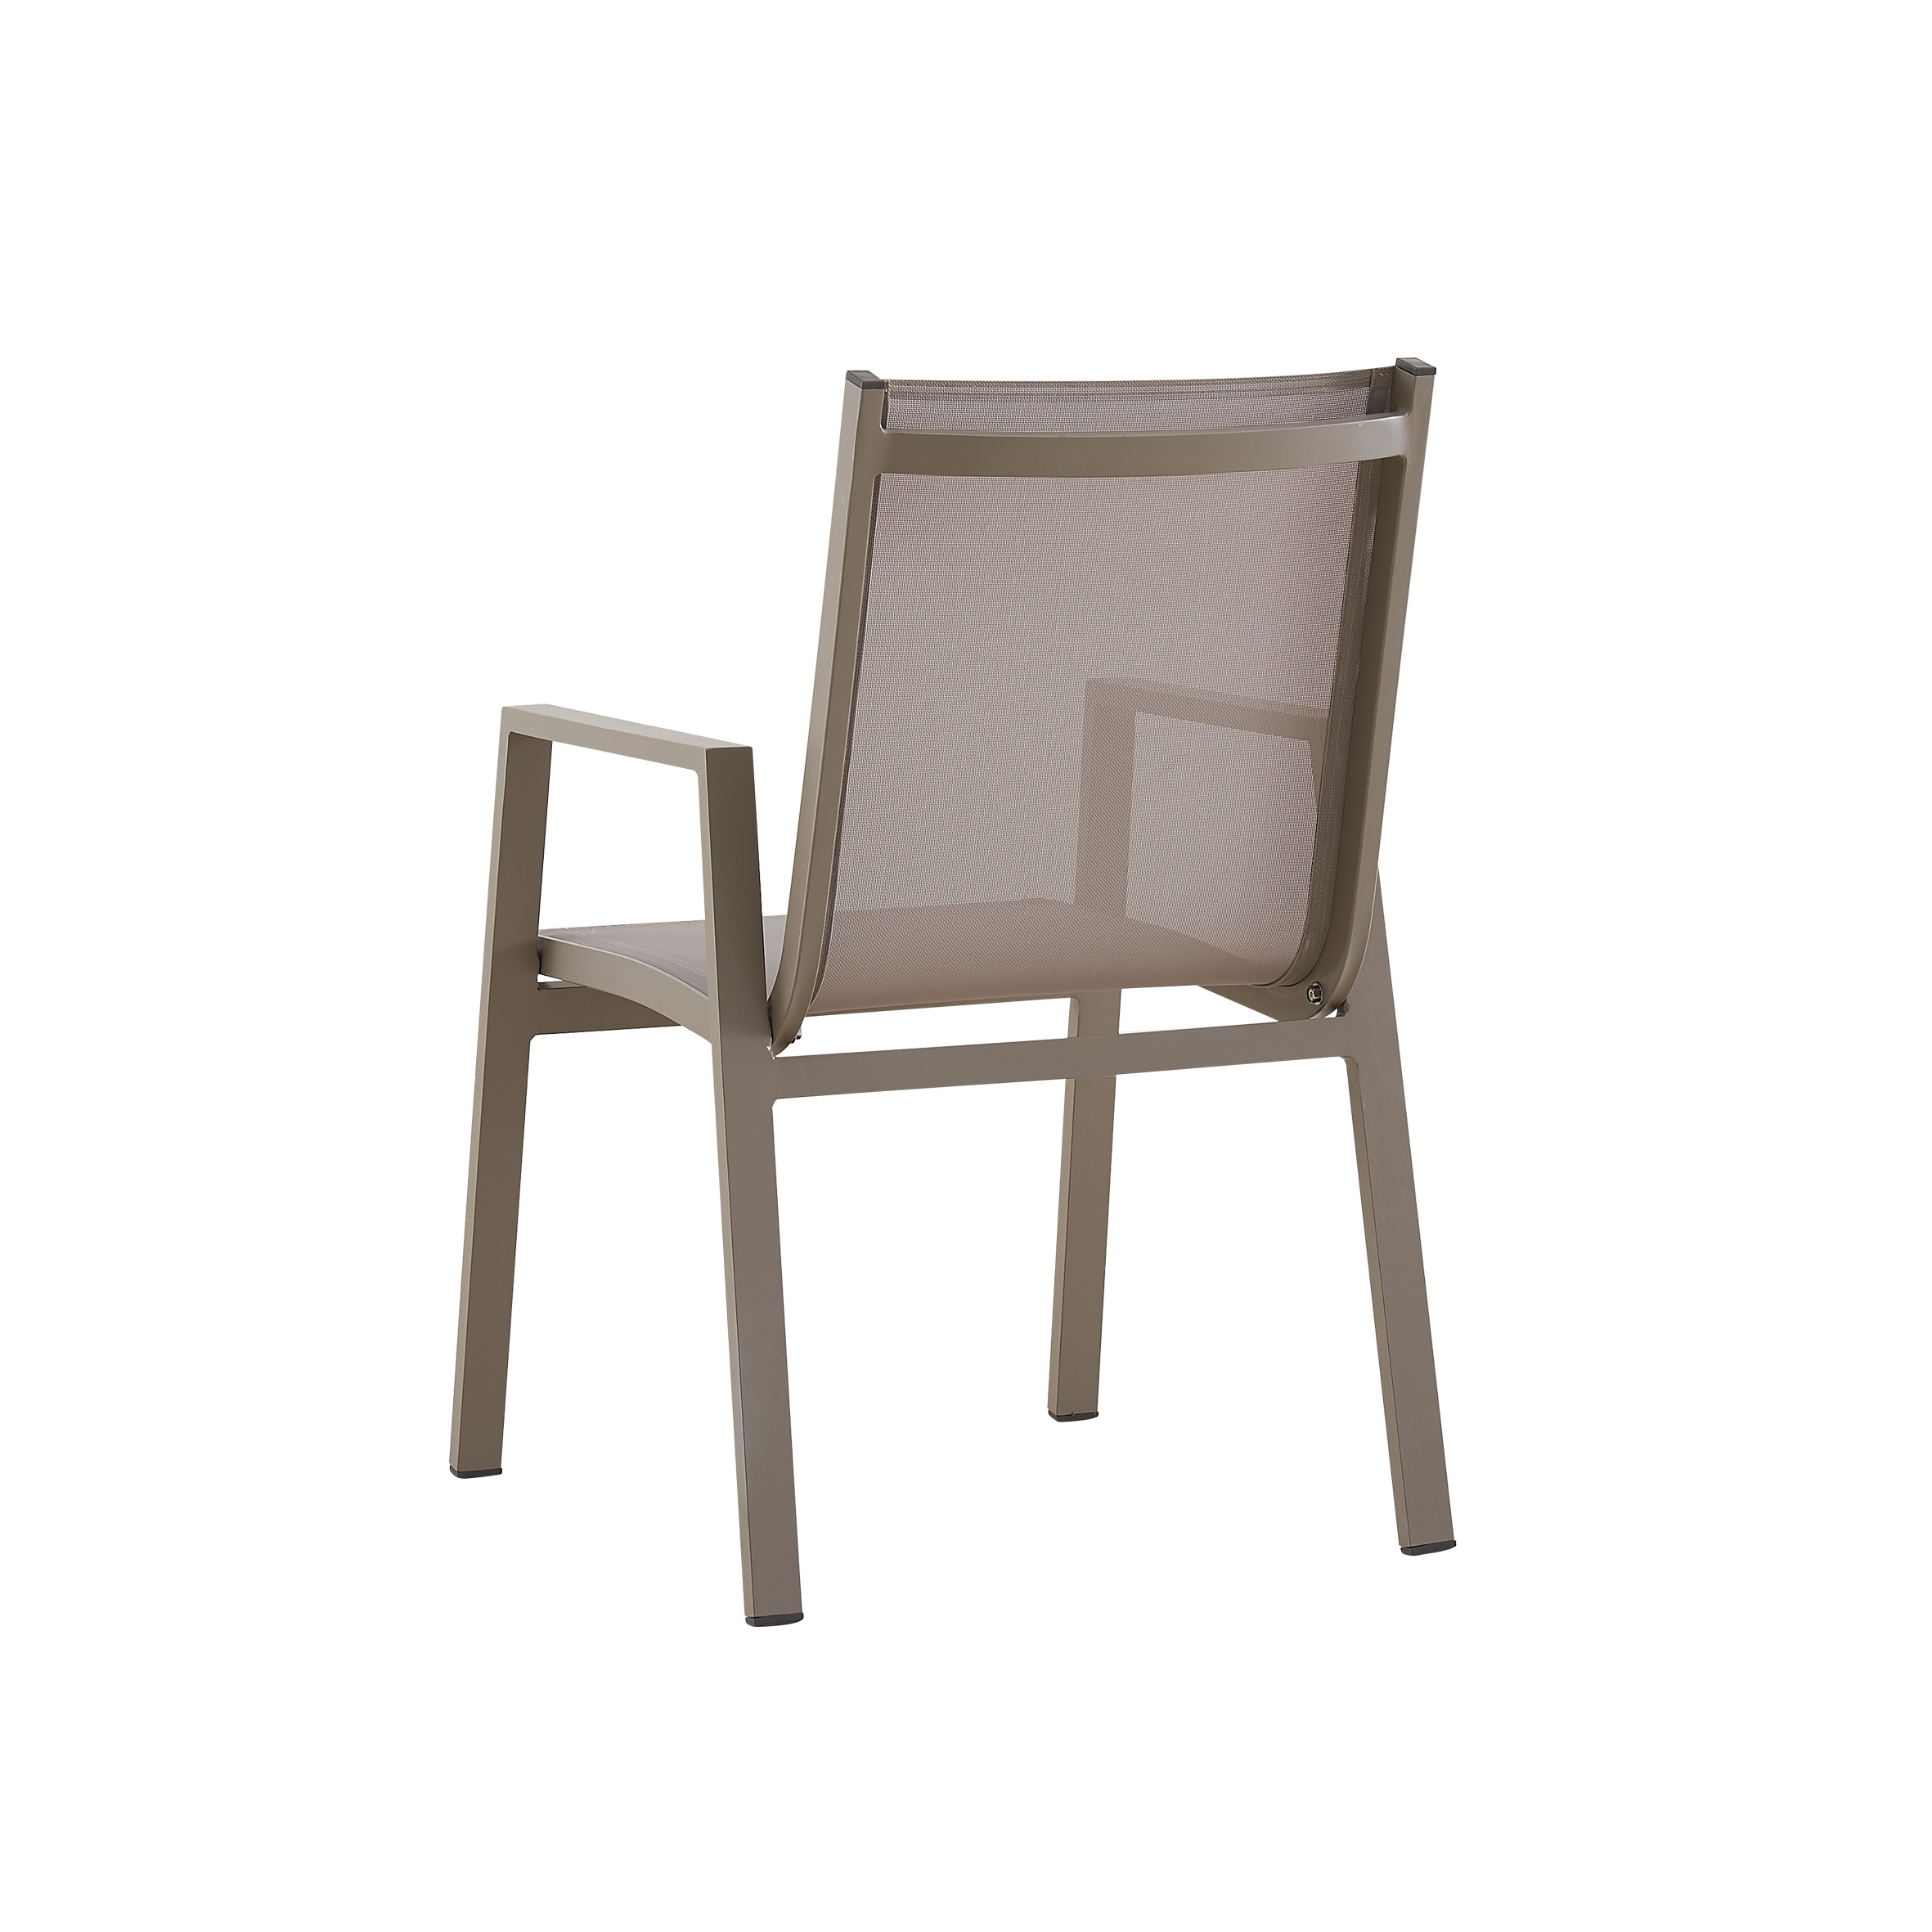 Kar beyazı tekstil yemek sandalyesi S9